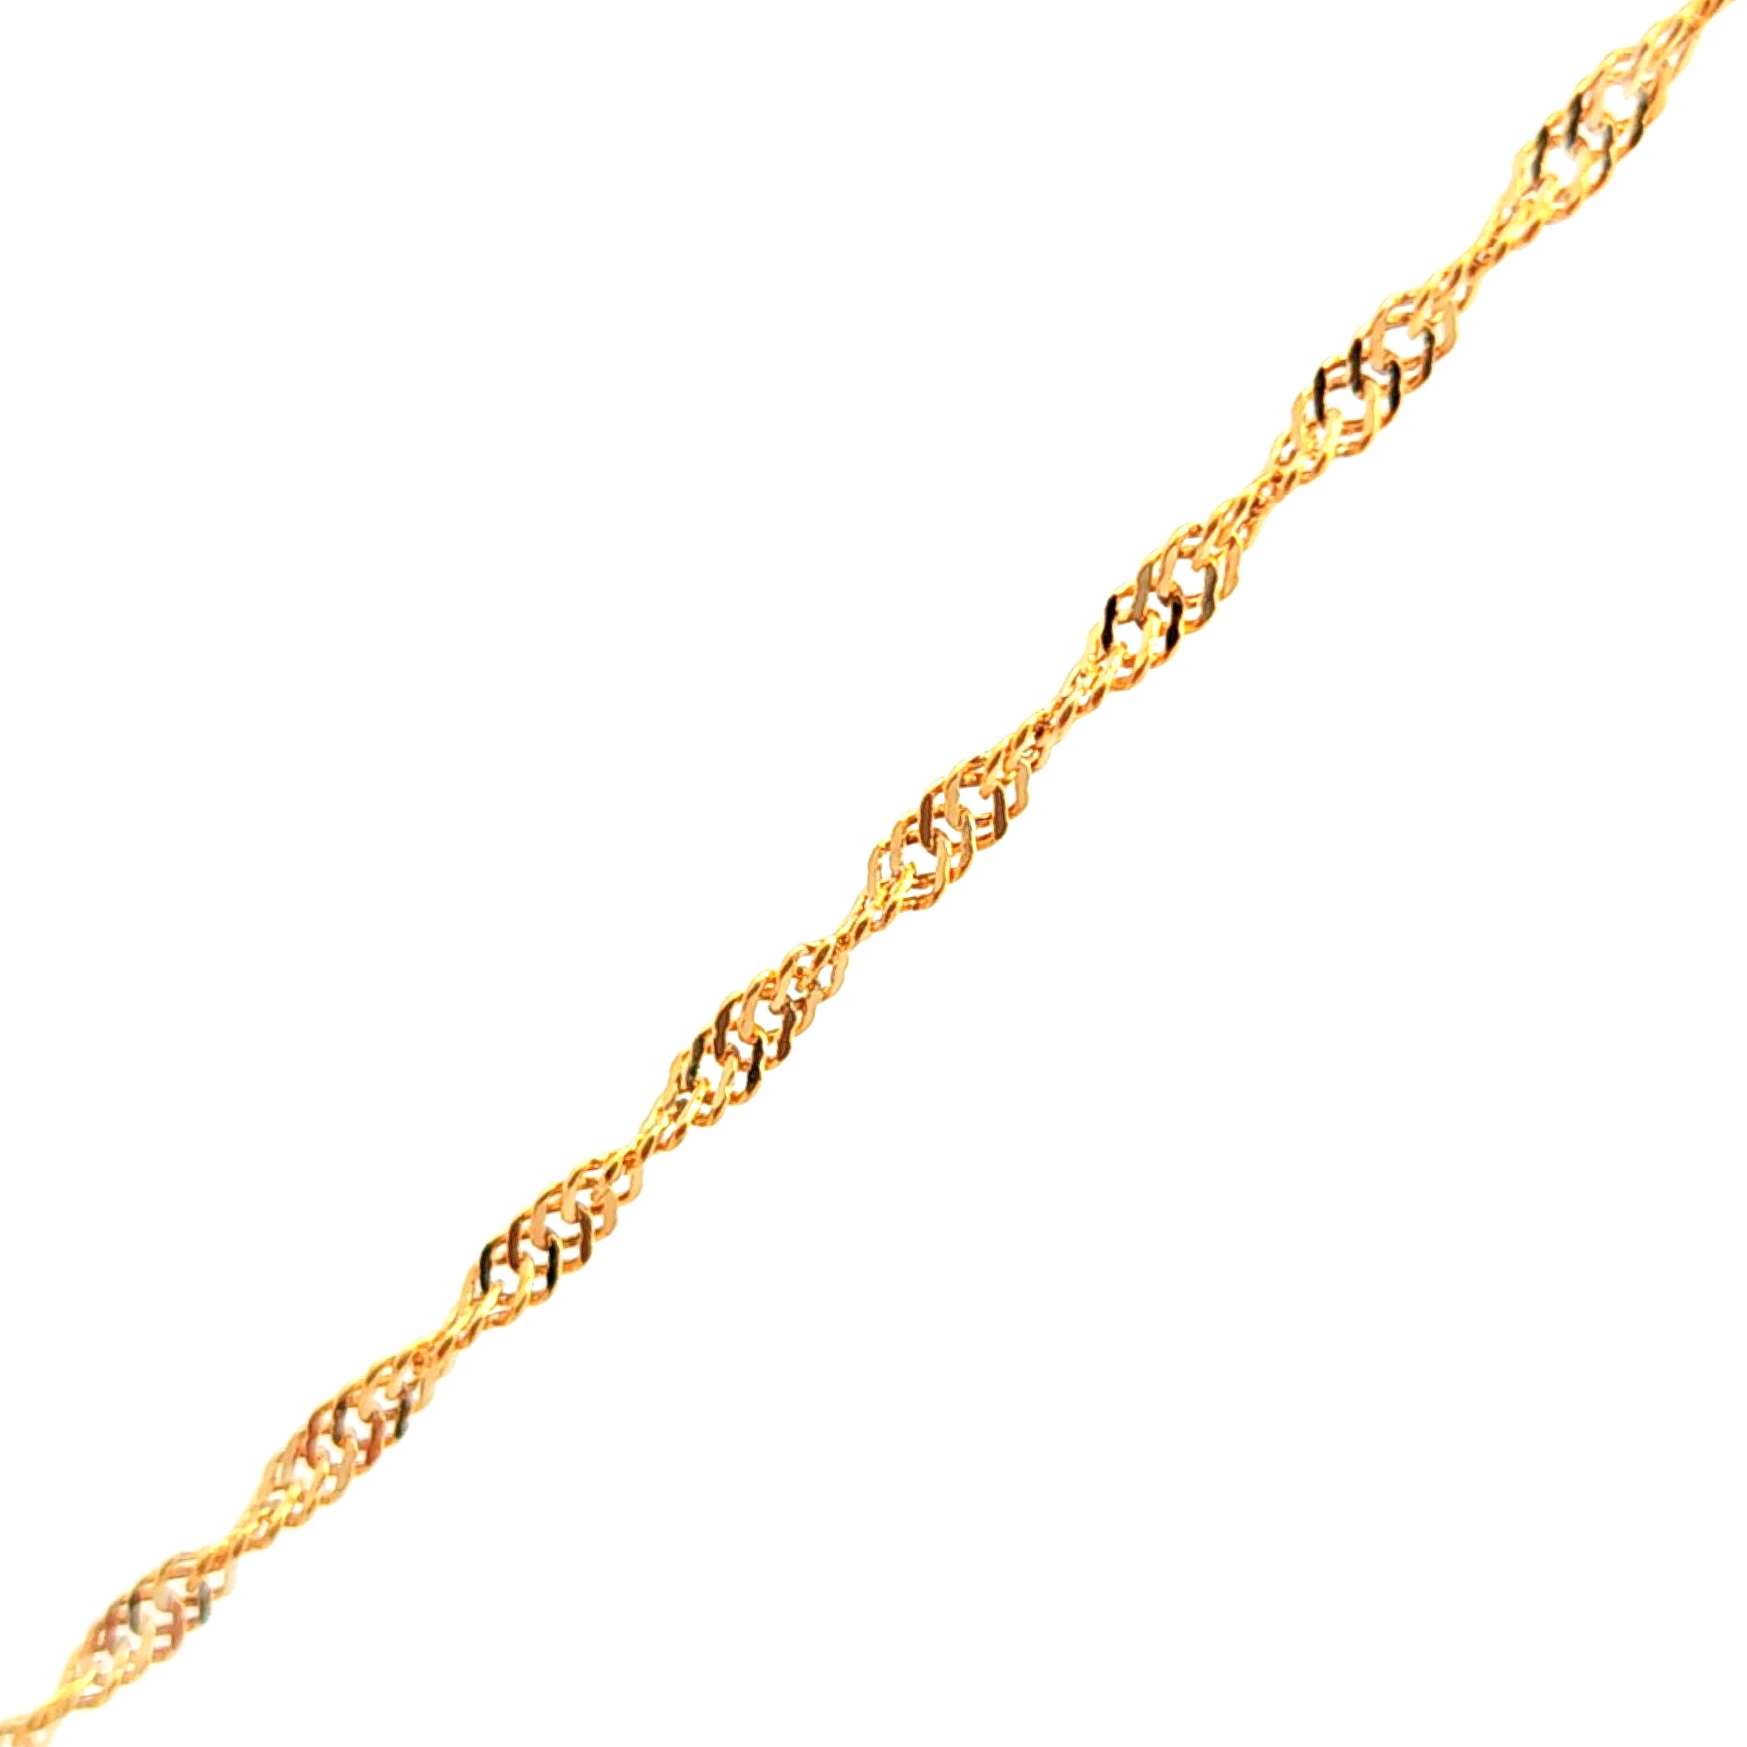 Cadena de oro amarillo 18k de eslabones cruzados 2mm medida 40 cm, peso 1,4 gr 2